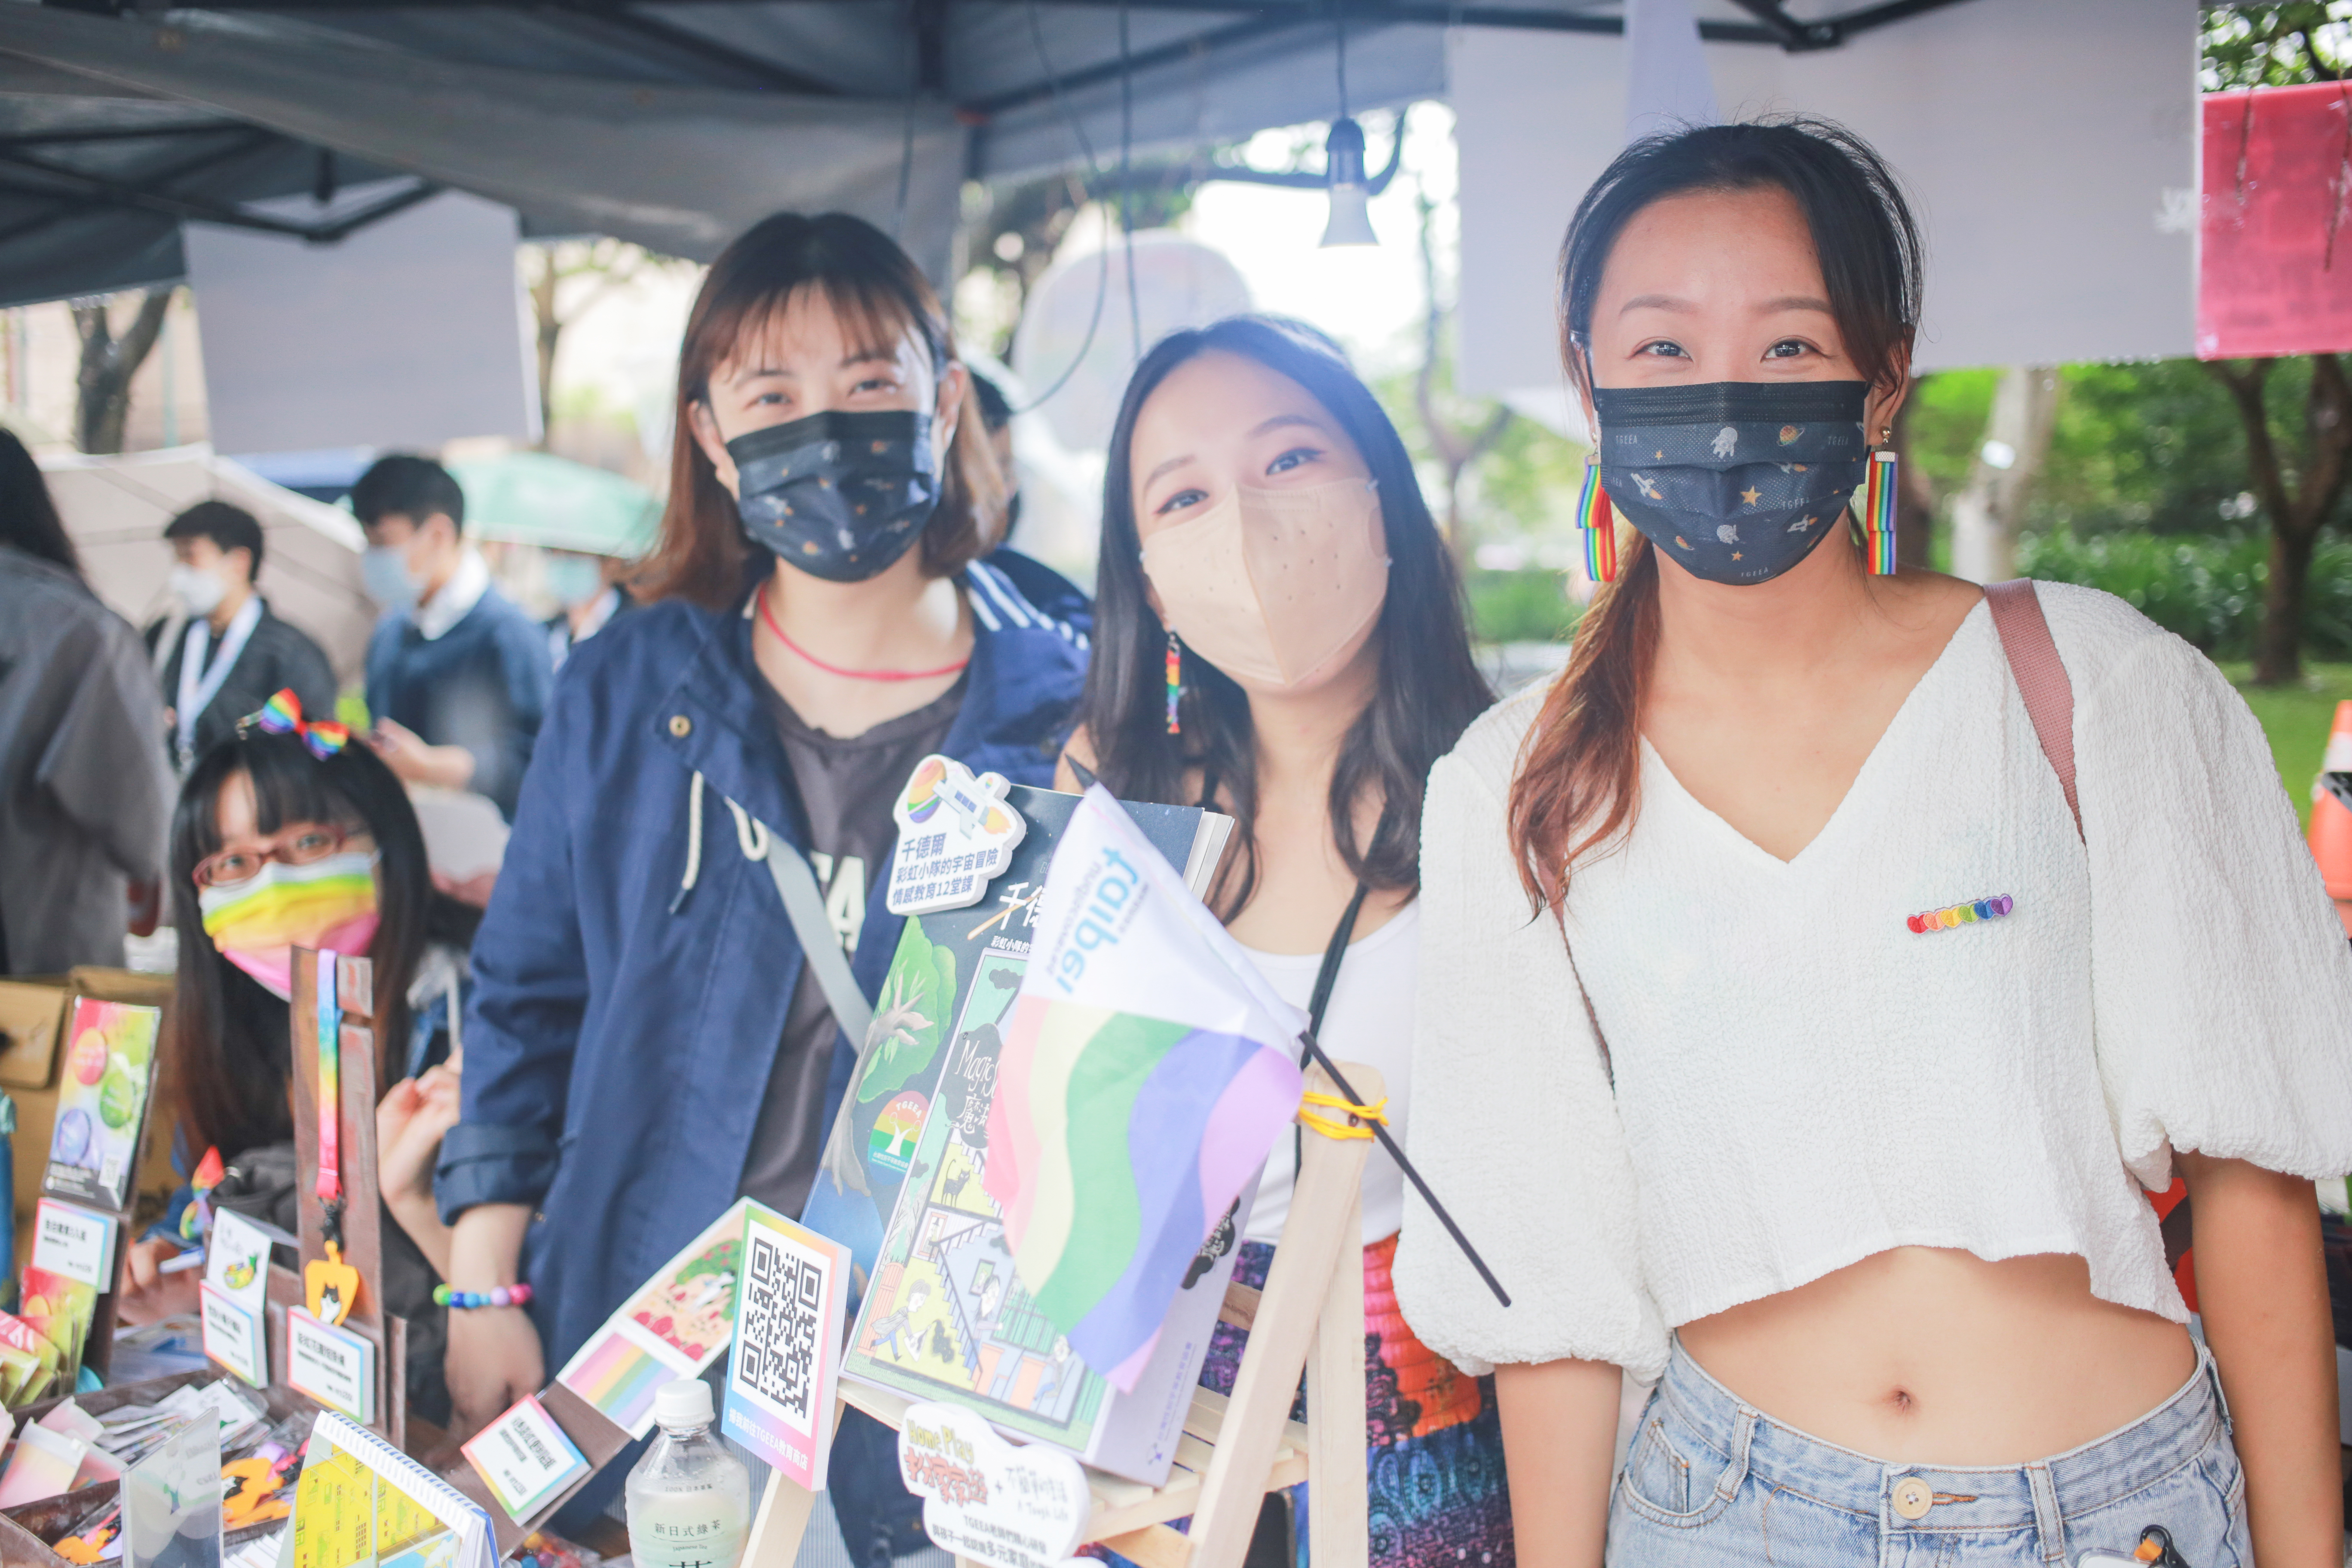 每 年 十 月 是 台 灣 的 同 志 驕 傲 月 ， T G E E A 也 積 極 參 與 相 關 活 動     